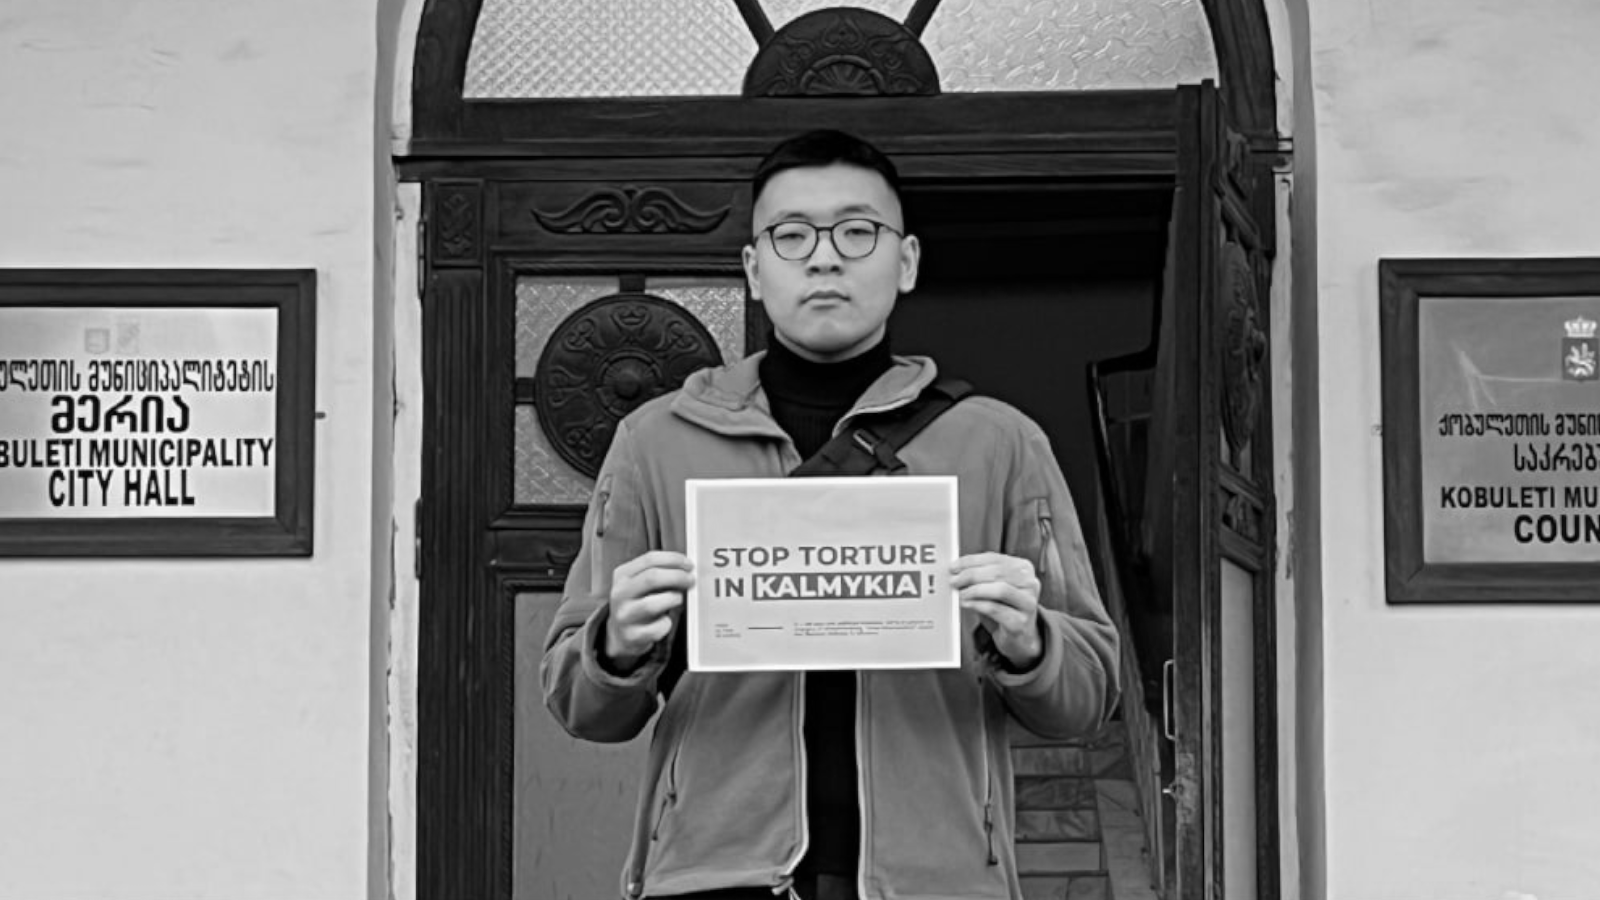 Політичному біженцеві Олександру Чурюмову загрожує депортація до Росії, де на нього чекає смерть у катівнях ФСБ